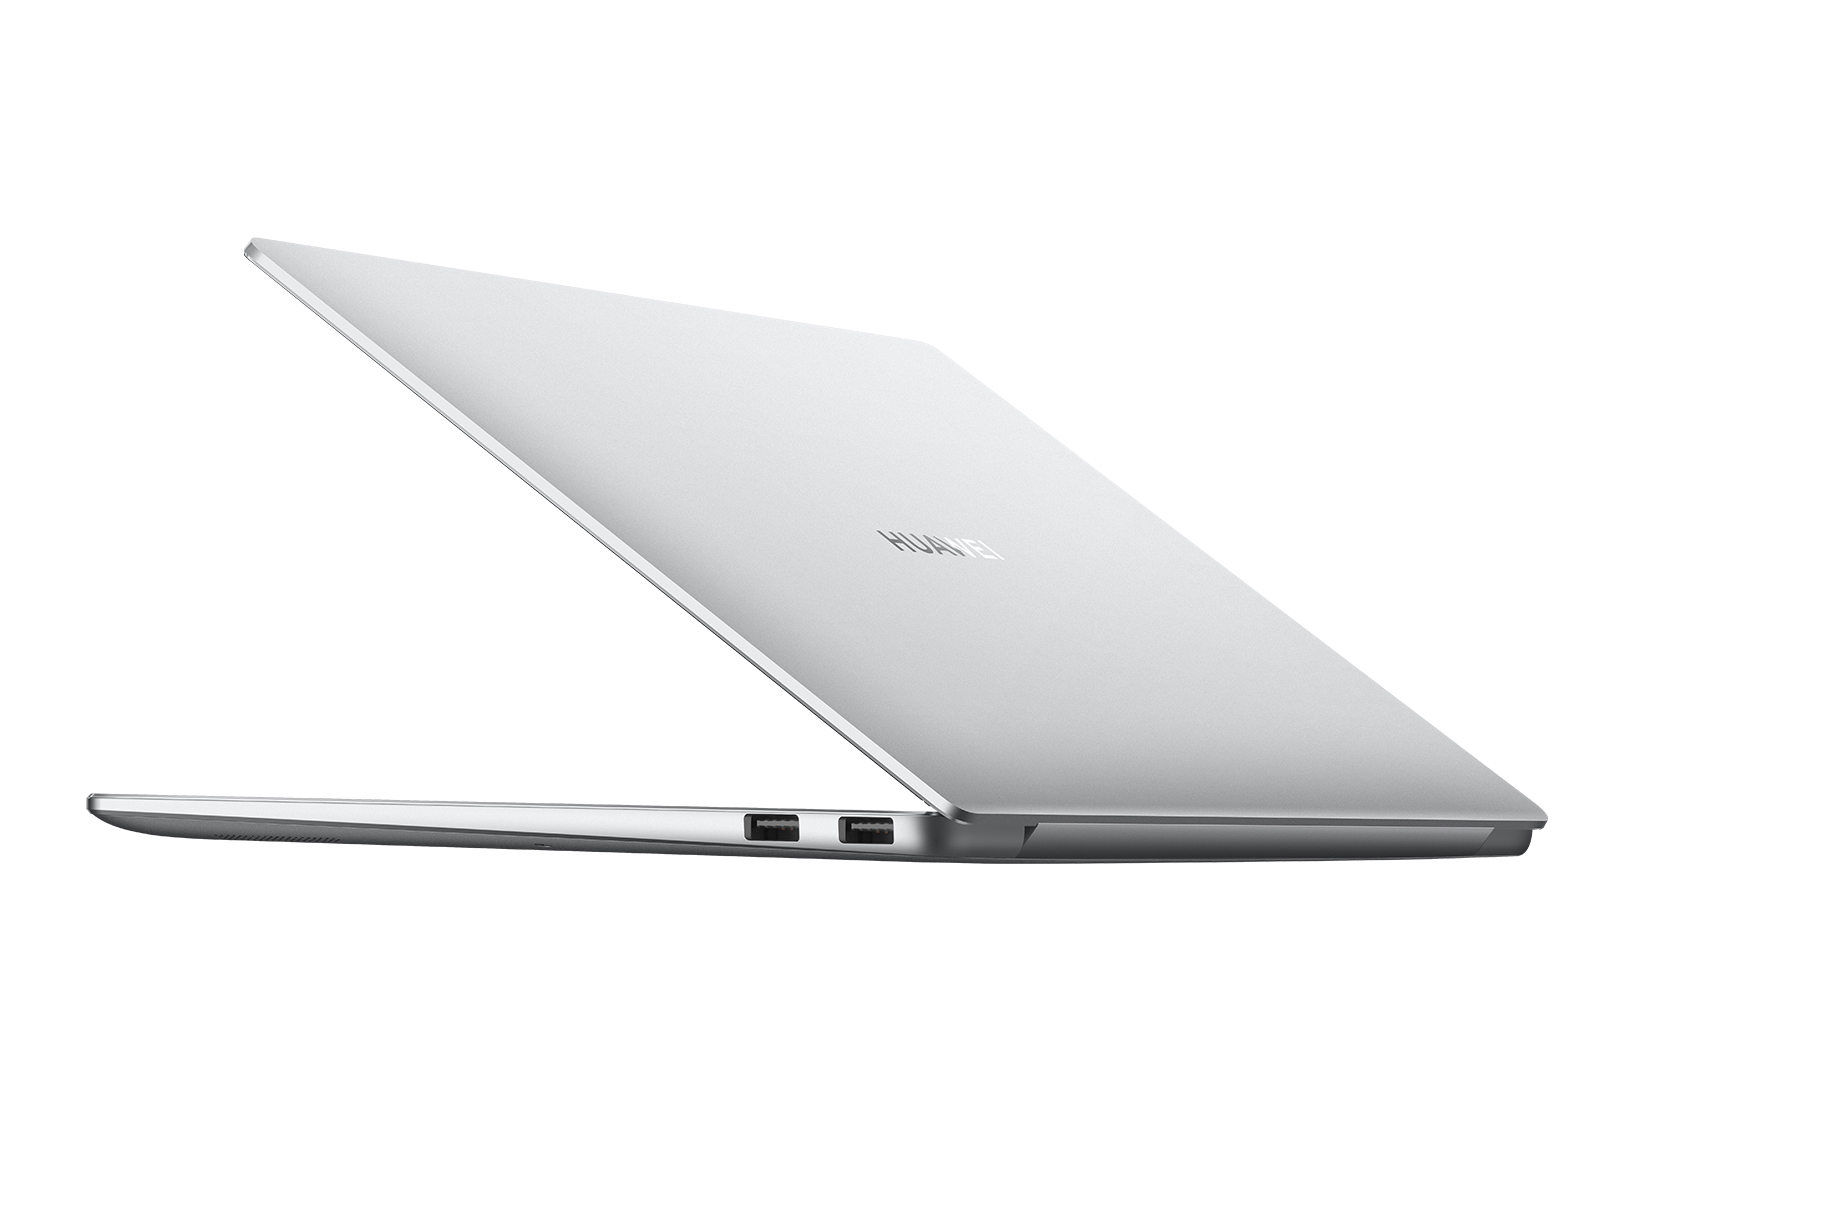 Phiên Bản Huawei MateBook 14 mới chạy vi xử lý AMD giá 21,9 triệu đồng - IMG 0013